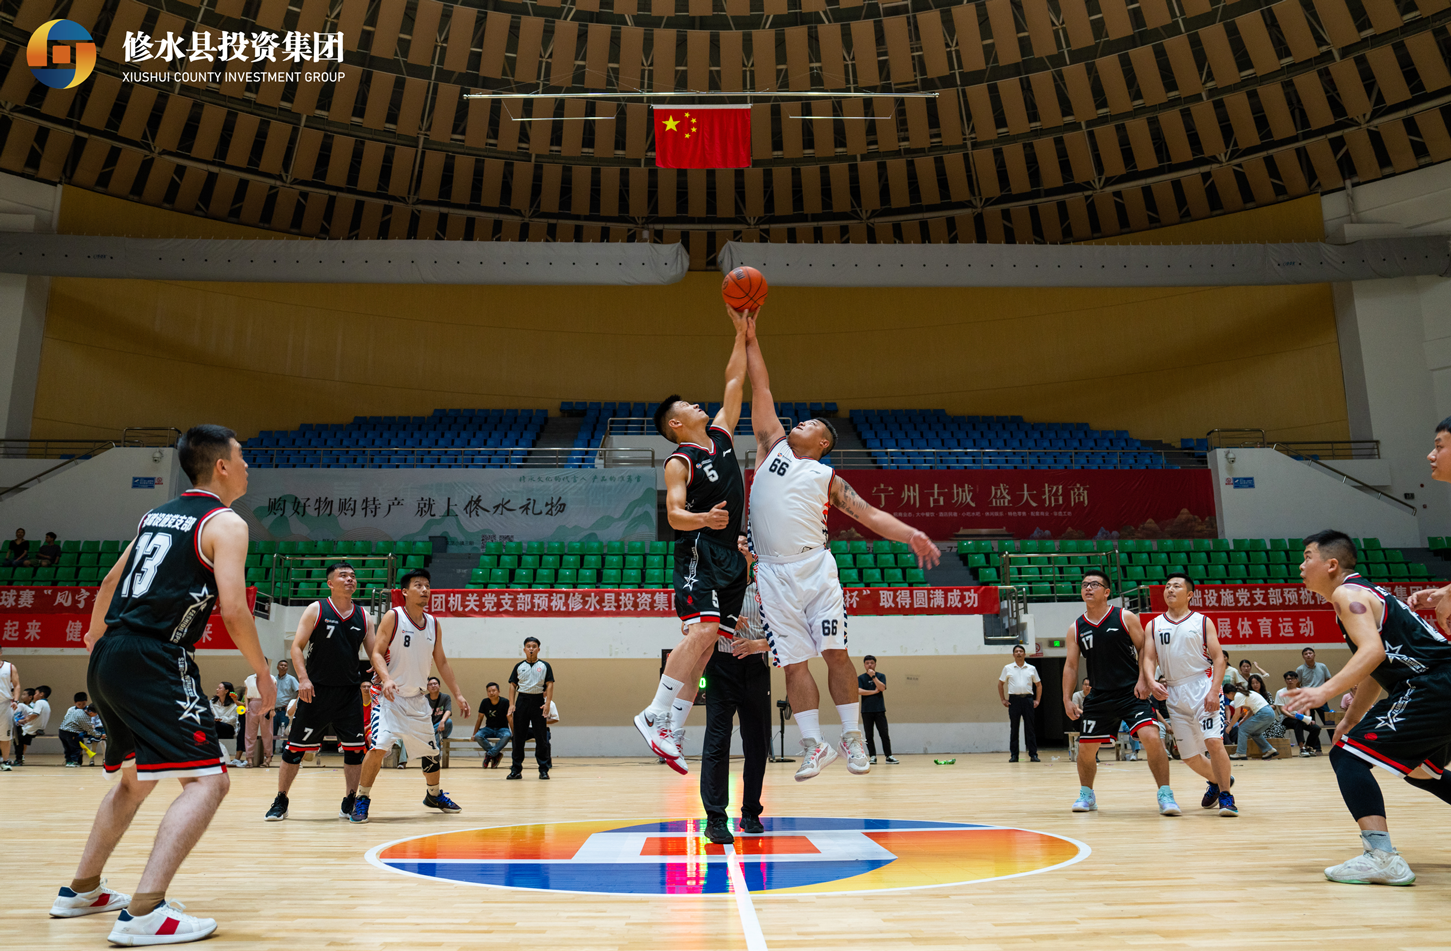 修水县投资集团第一届“凤宁杯”篮球赛风采